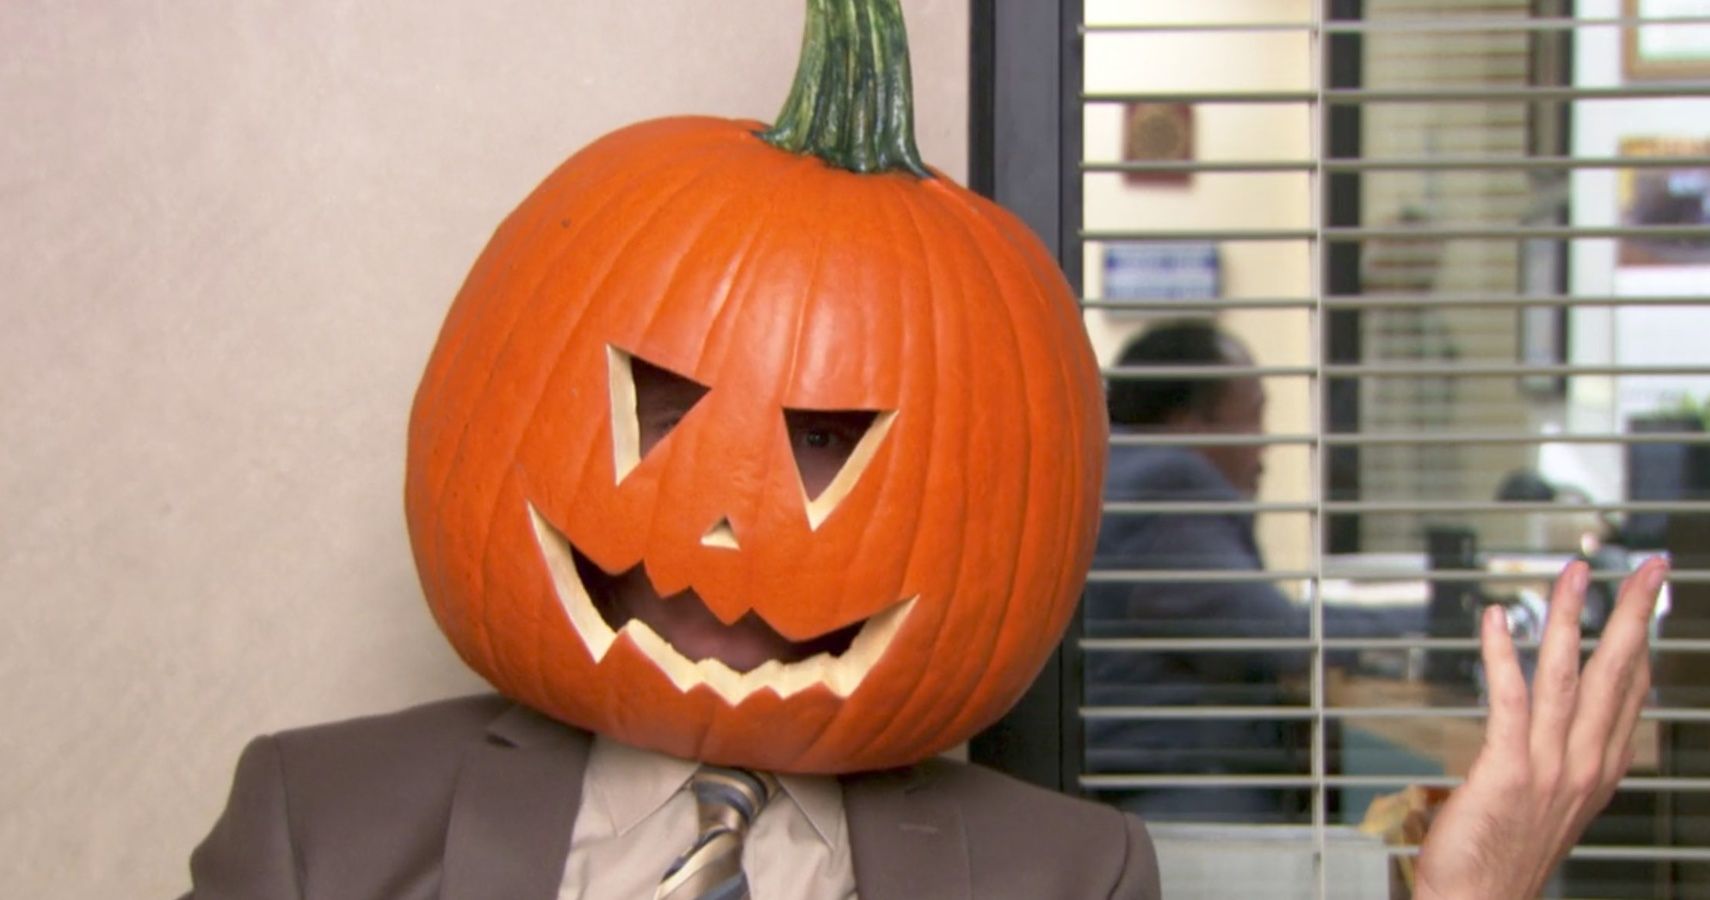 The Office Pumpkin Dwight